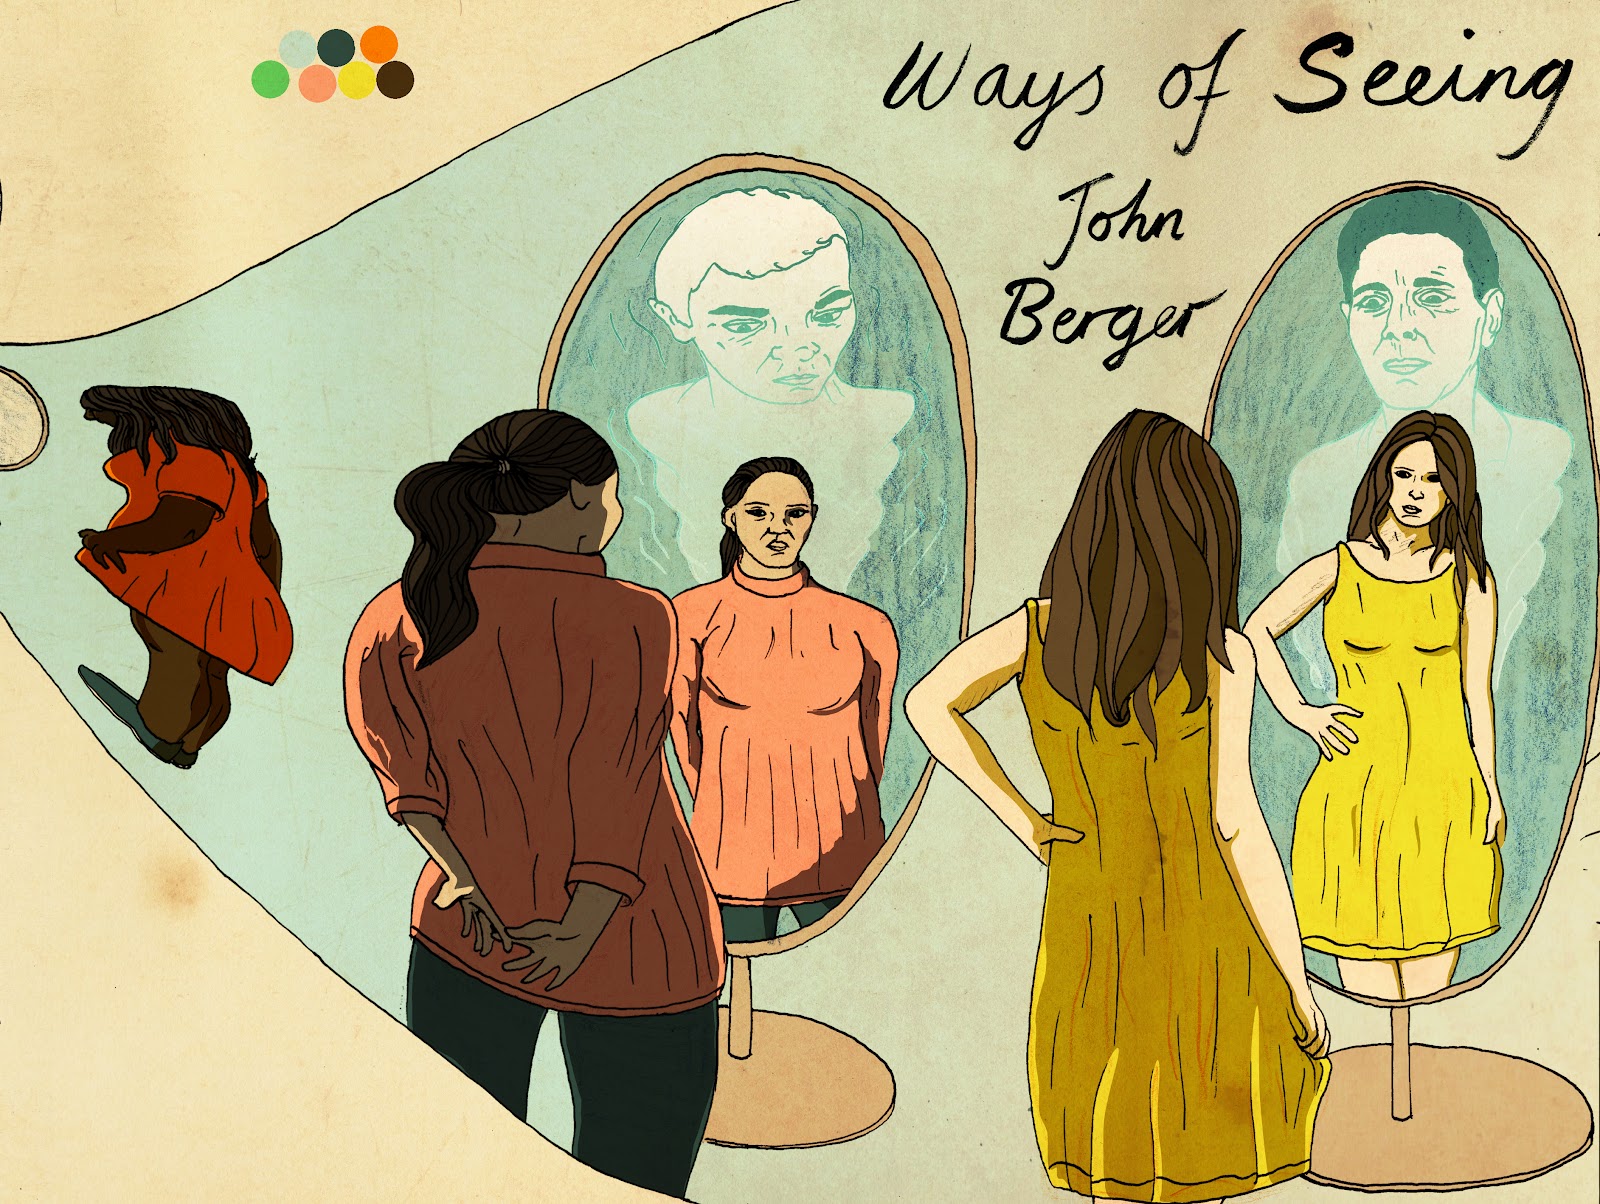 john berger ways of seeing women